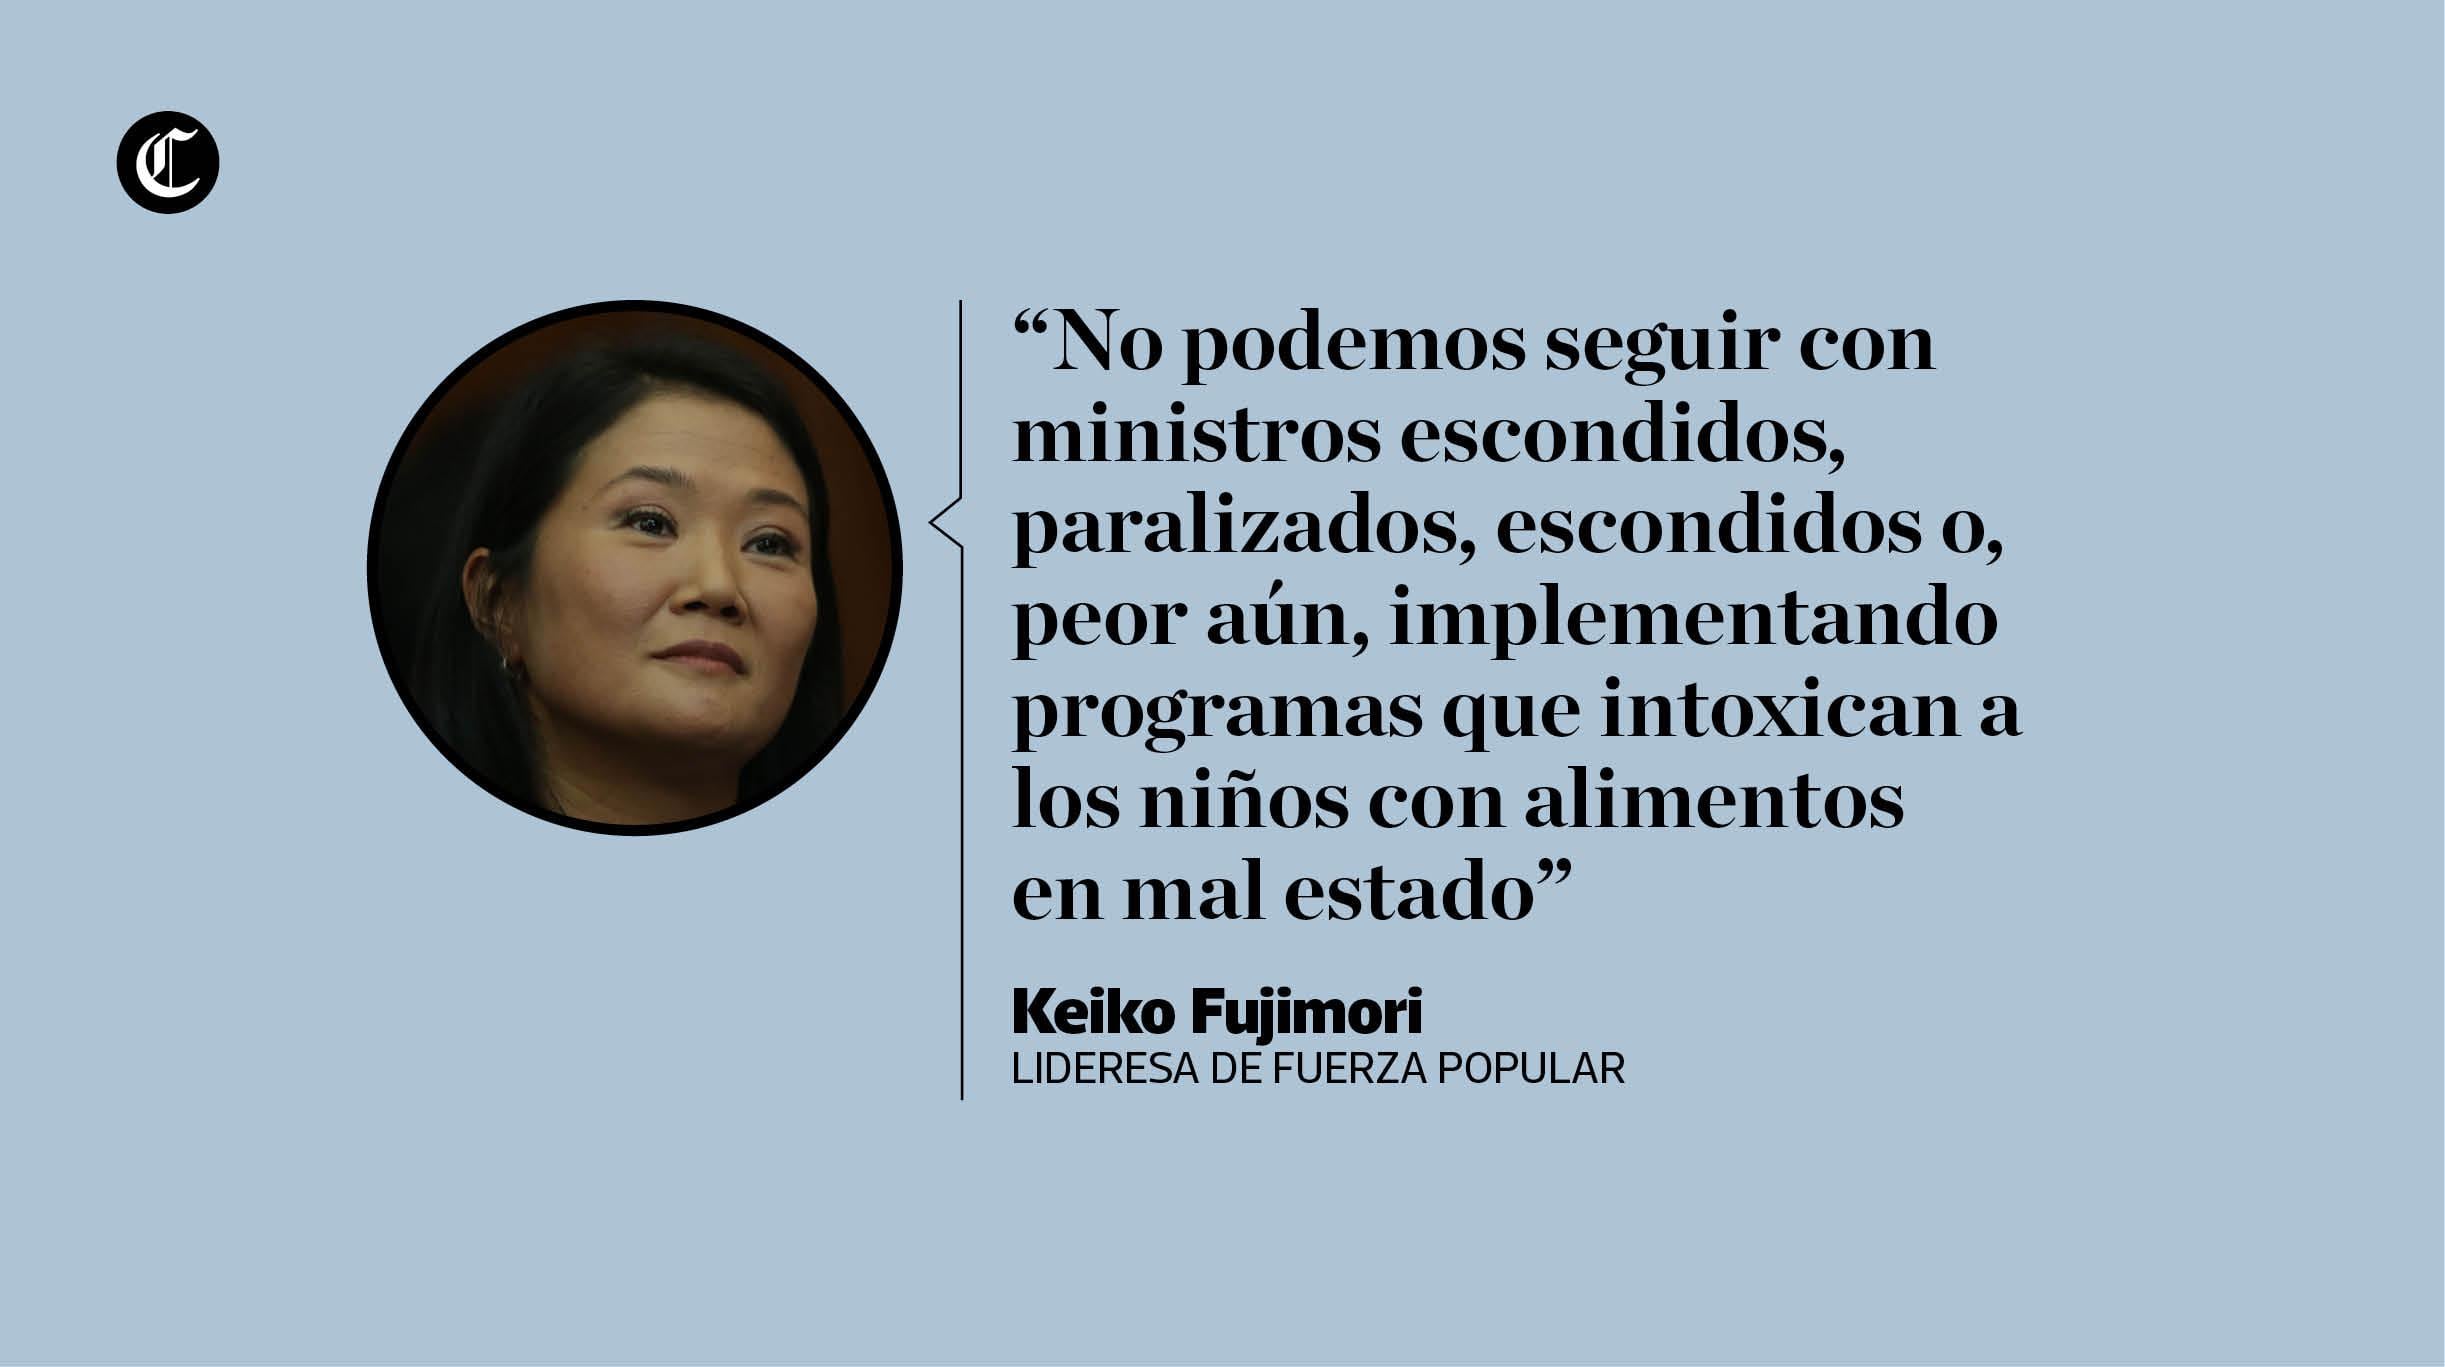 Keiko Fujimori cuestionó al presidente Martín Vizcarra por plantear proyectos de reforma política, a los que calificó como populistas. (Composición: El Comercio)